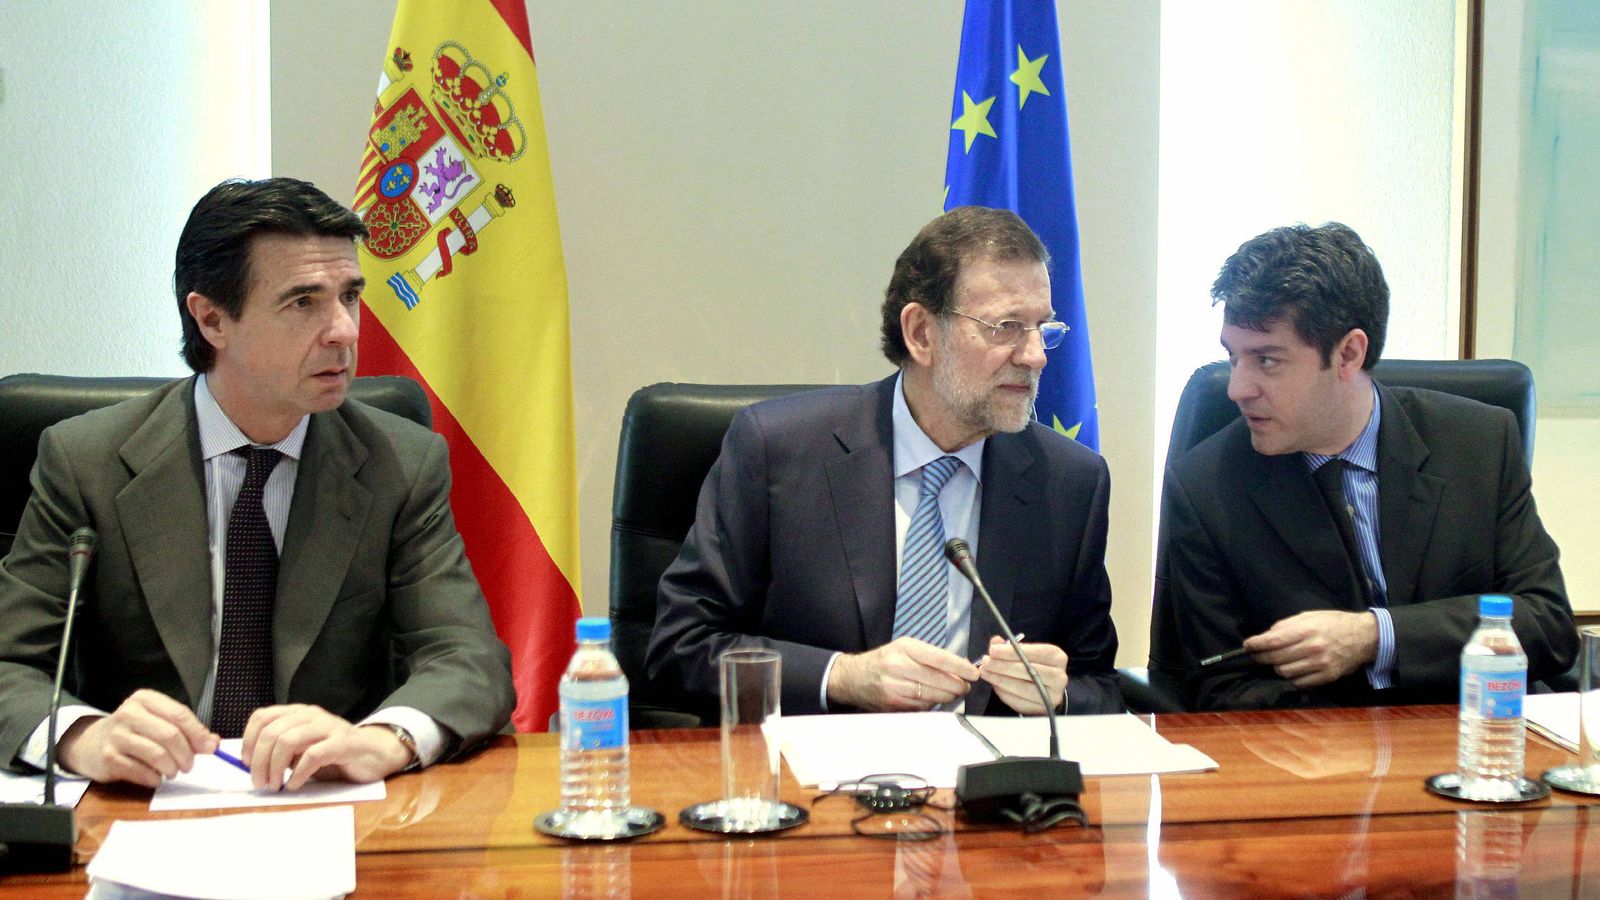 Foto: Foto de archivo del exministro de Industria José Manuel Soria, junto con el presidente del Gobierno, Mariano Rajoy, y el actual ministro de Energía, Álvaro Nadal. (EFE)